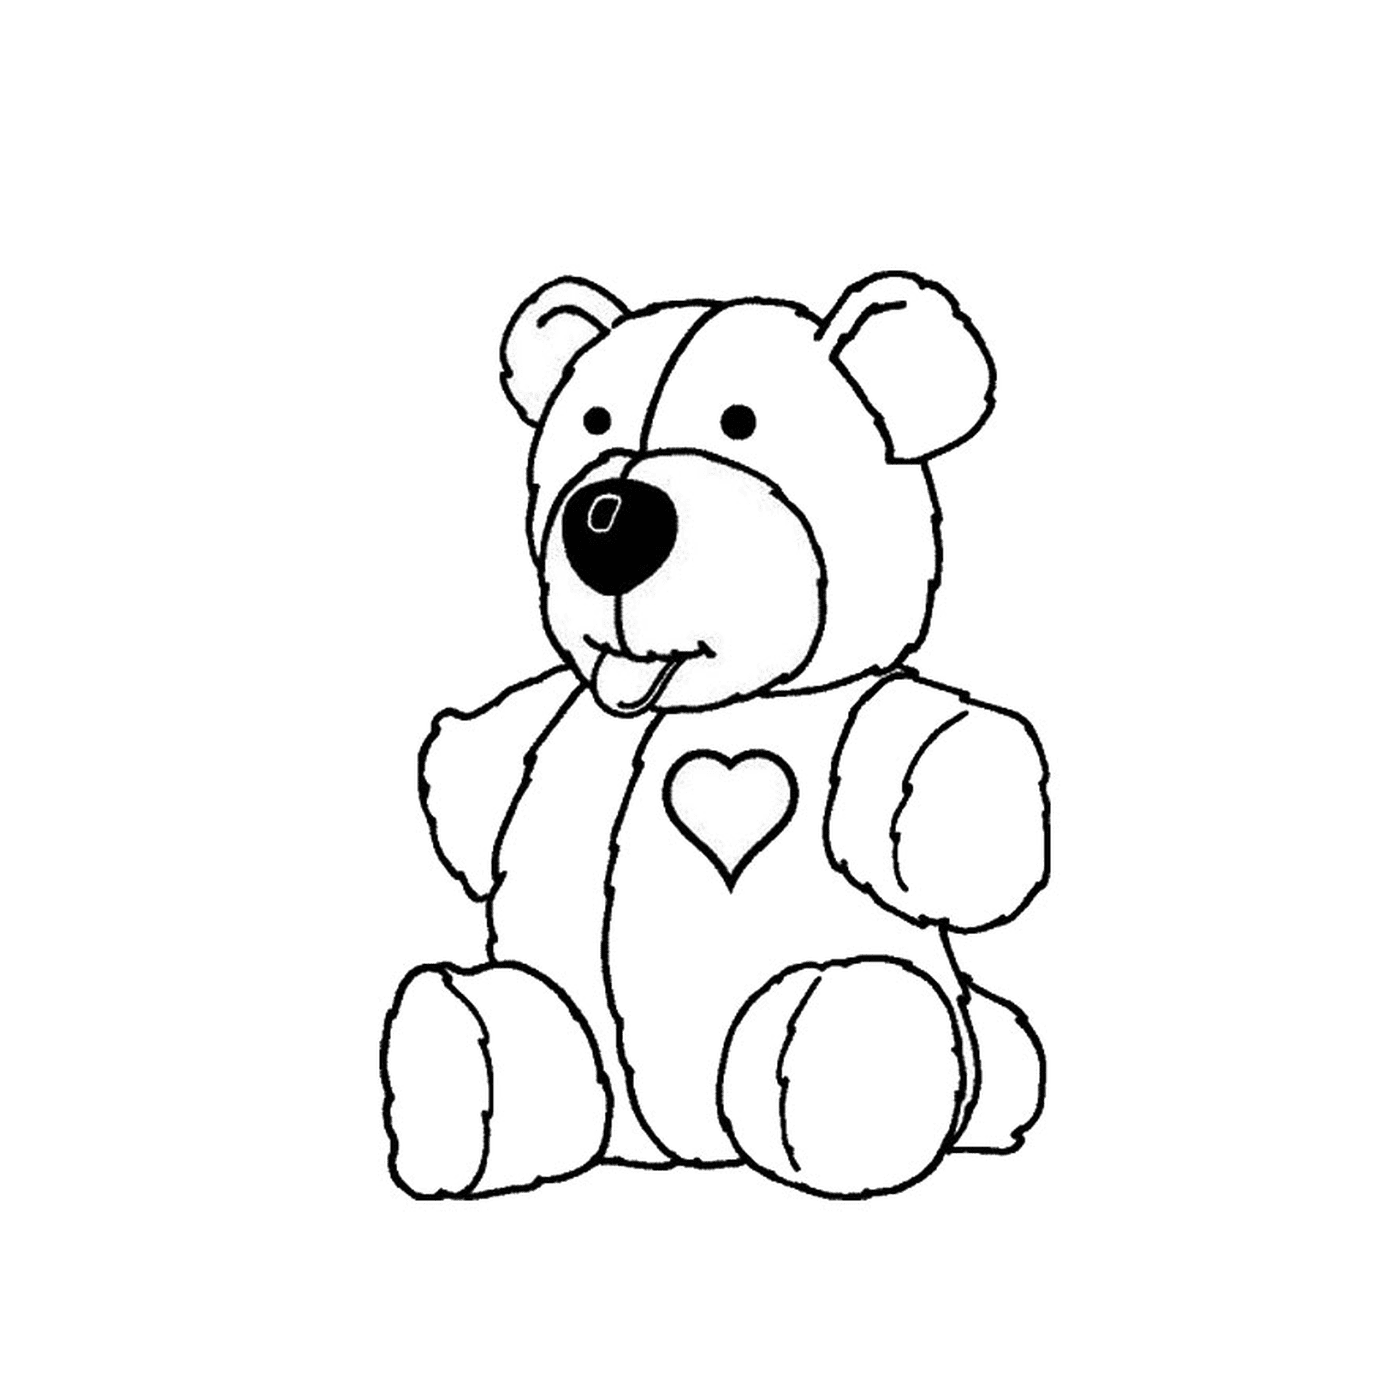  A teddy bear 